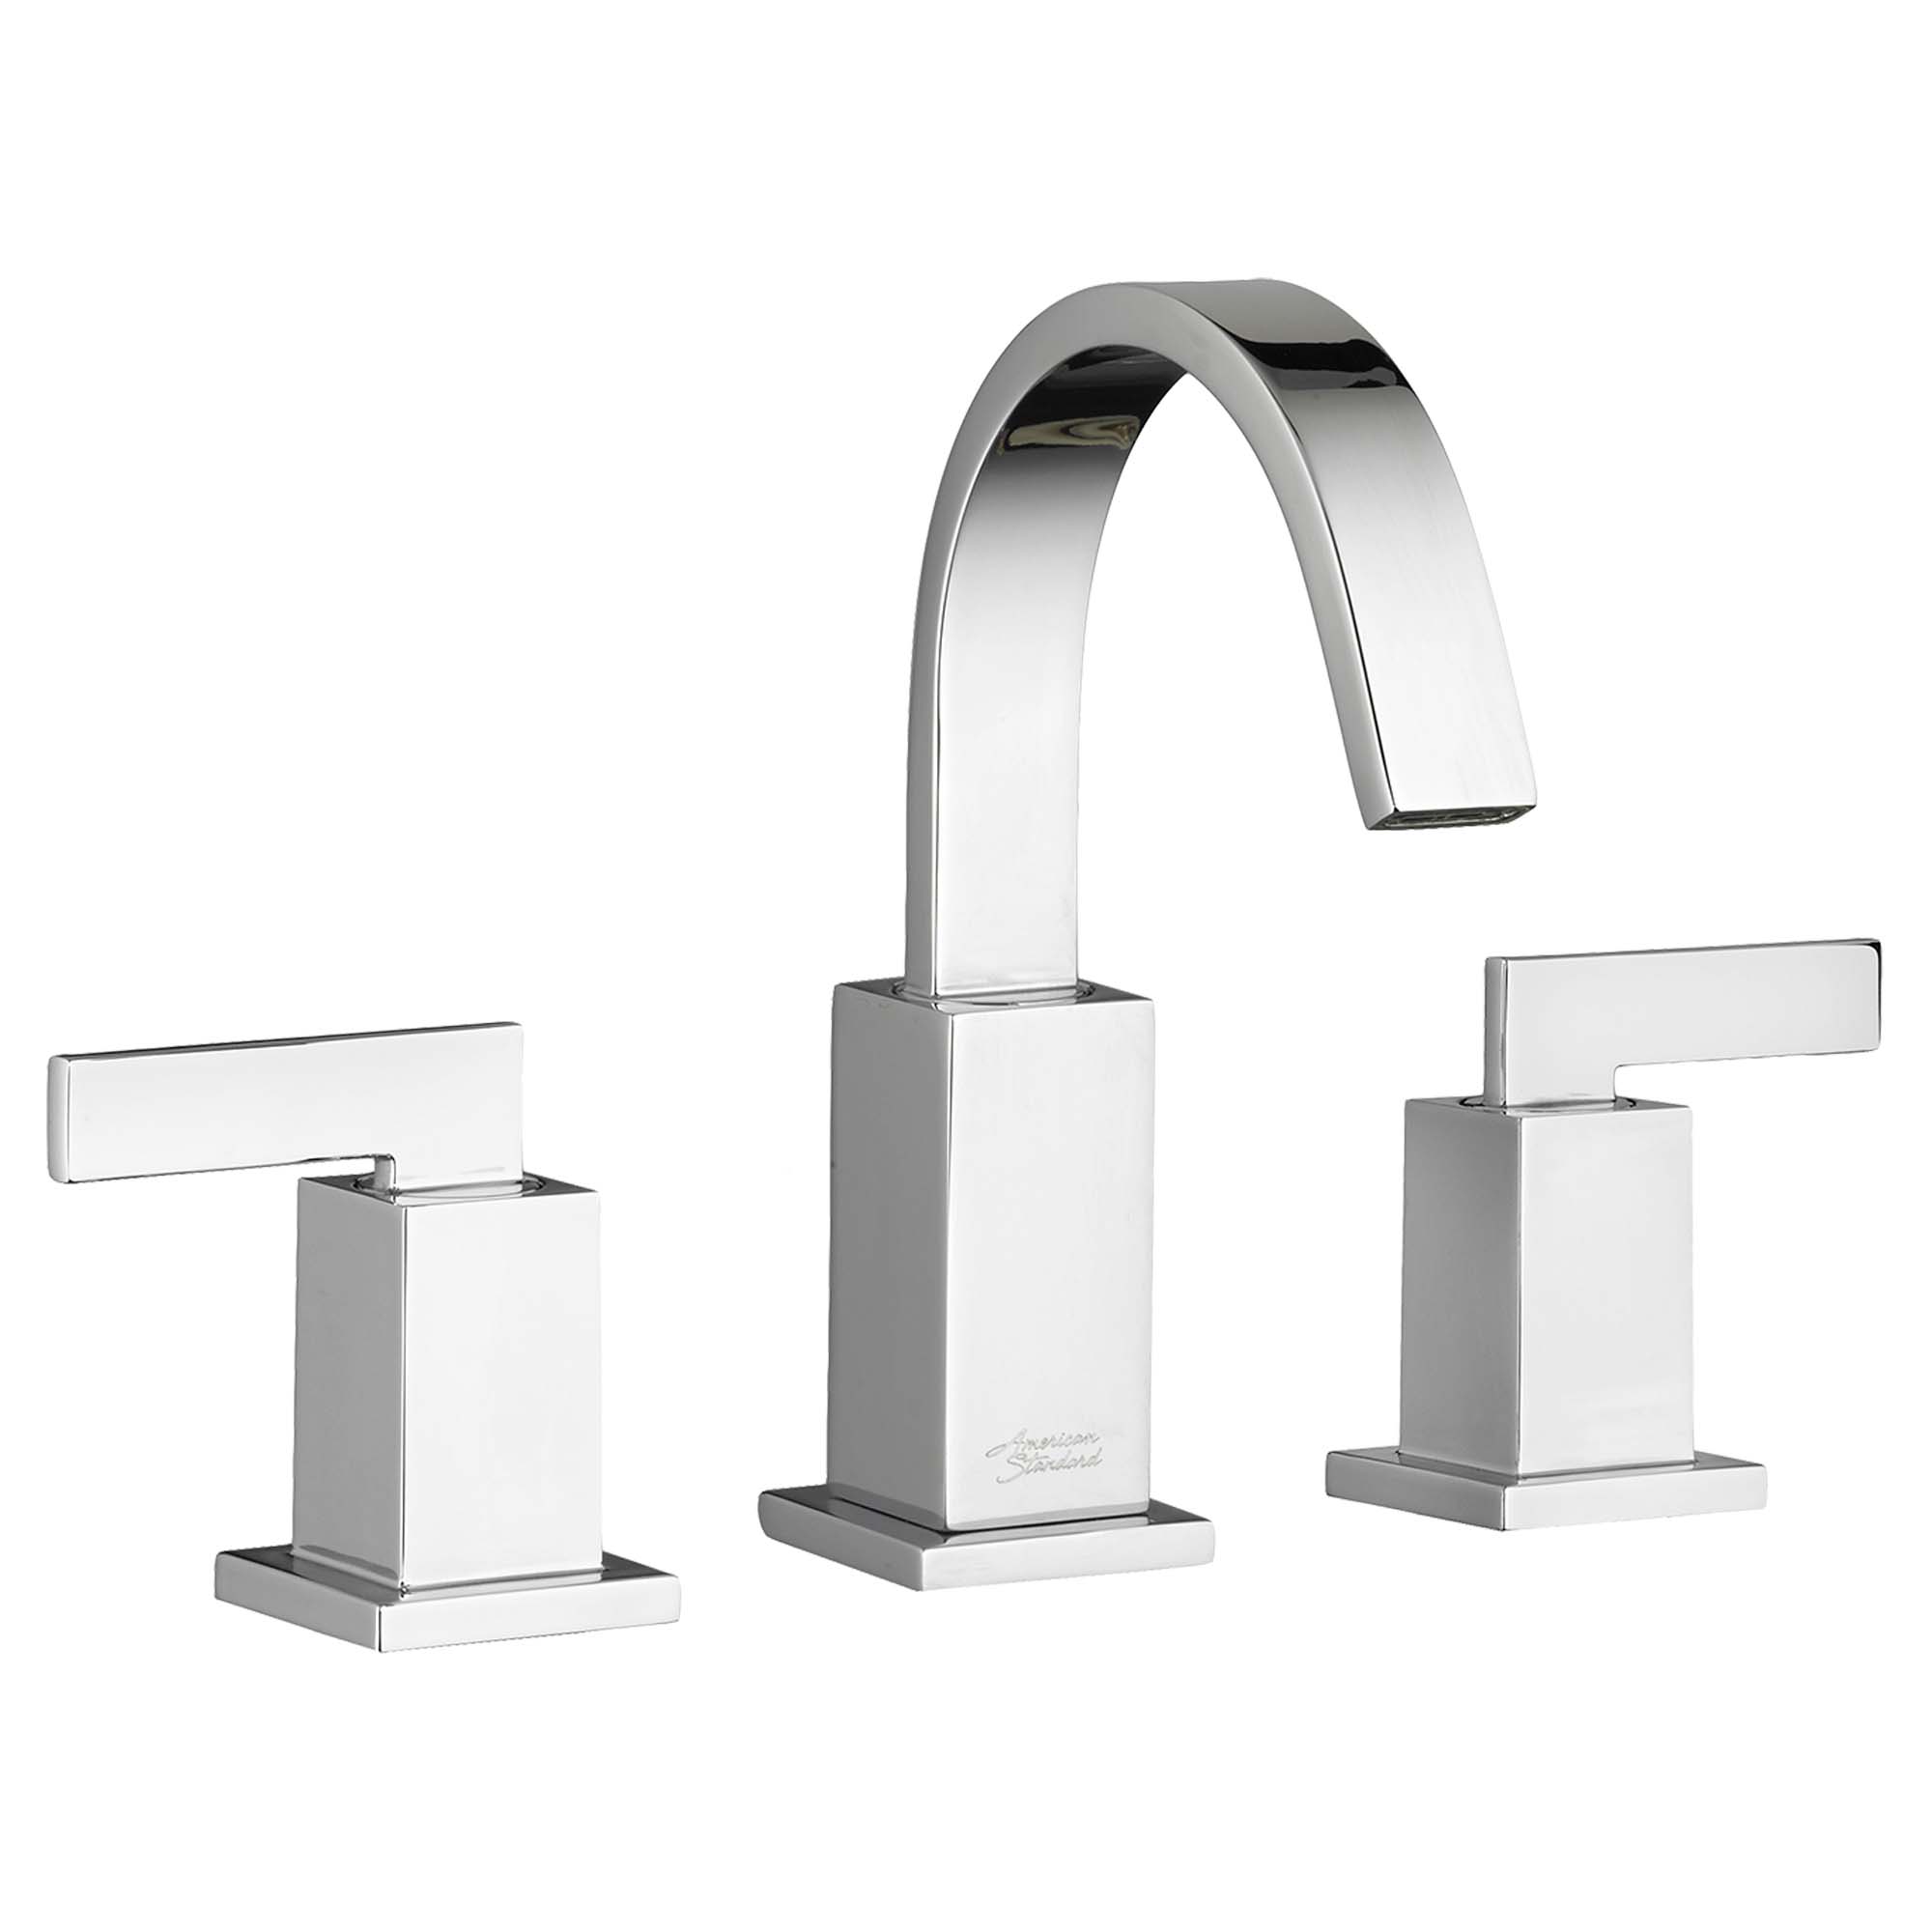 スマートフォン/携帯電話 スマートフォン本体 Time Square® 8-Inch Widespread 2-Handle Bathroom Faucet 1.2 gpm/4.5 L/min  With Lever Handles